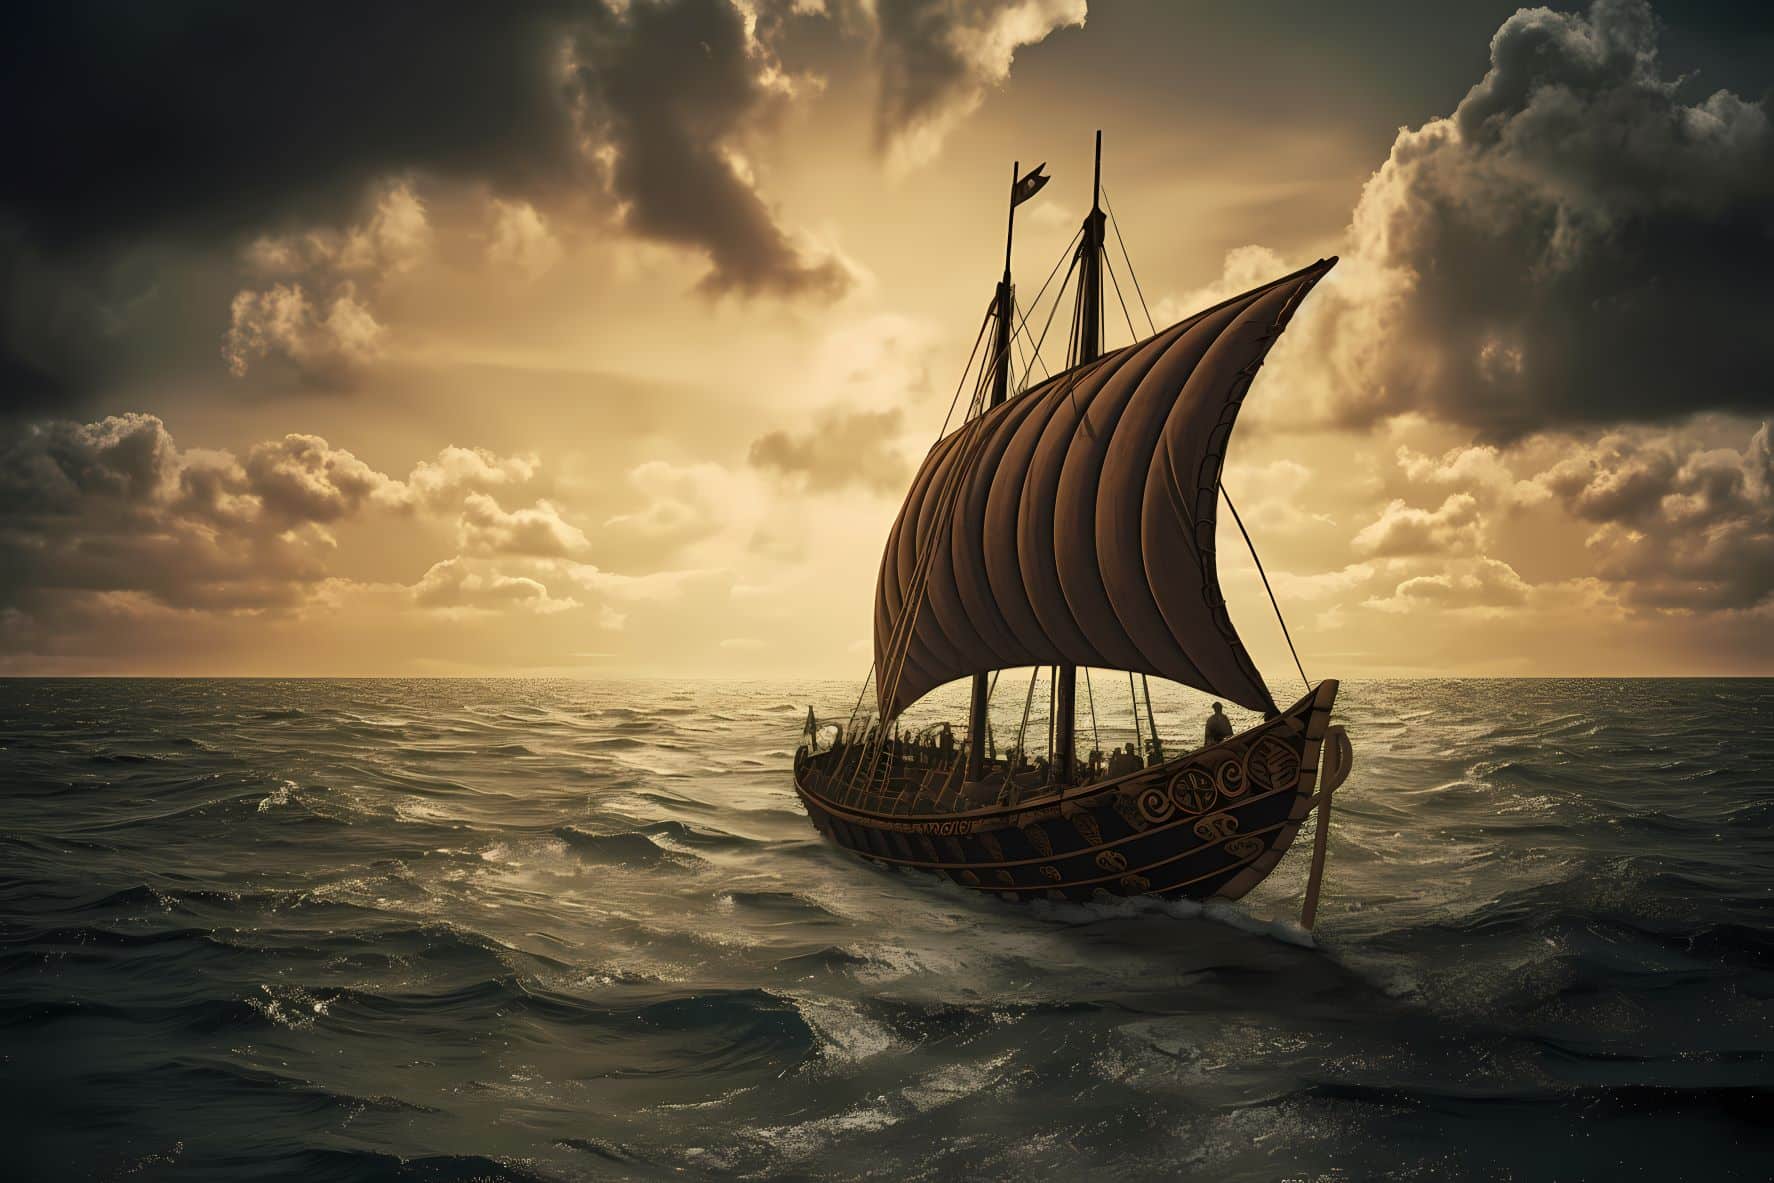 The Mighty Viking Longship at Sea